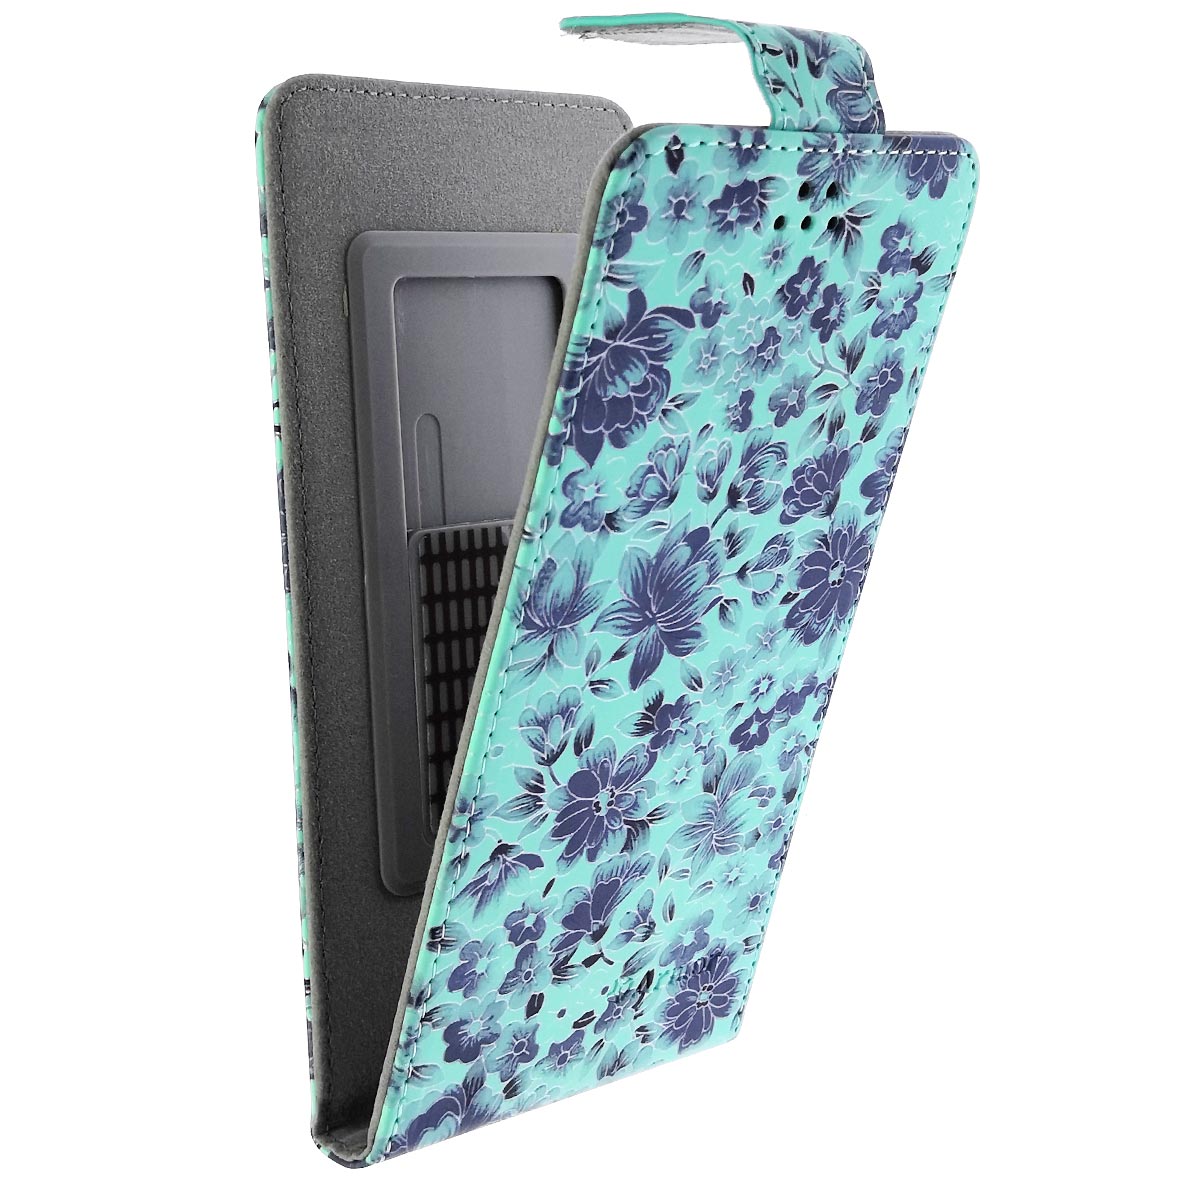 Чехол книжка универсальная Армор для смартфонов размером L, экокожа, цвет бирюзовый с цветочками